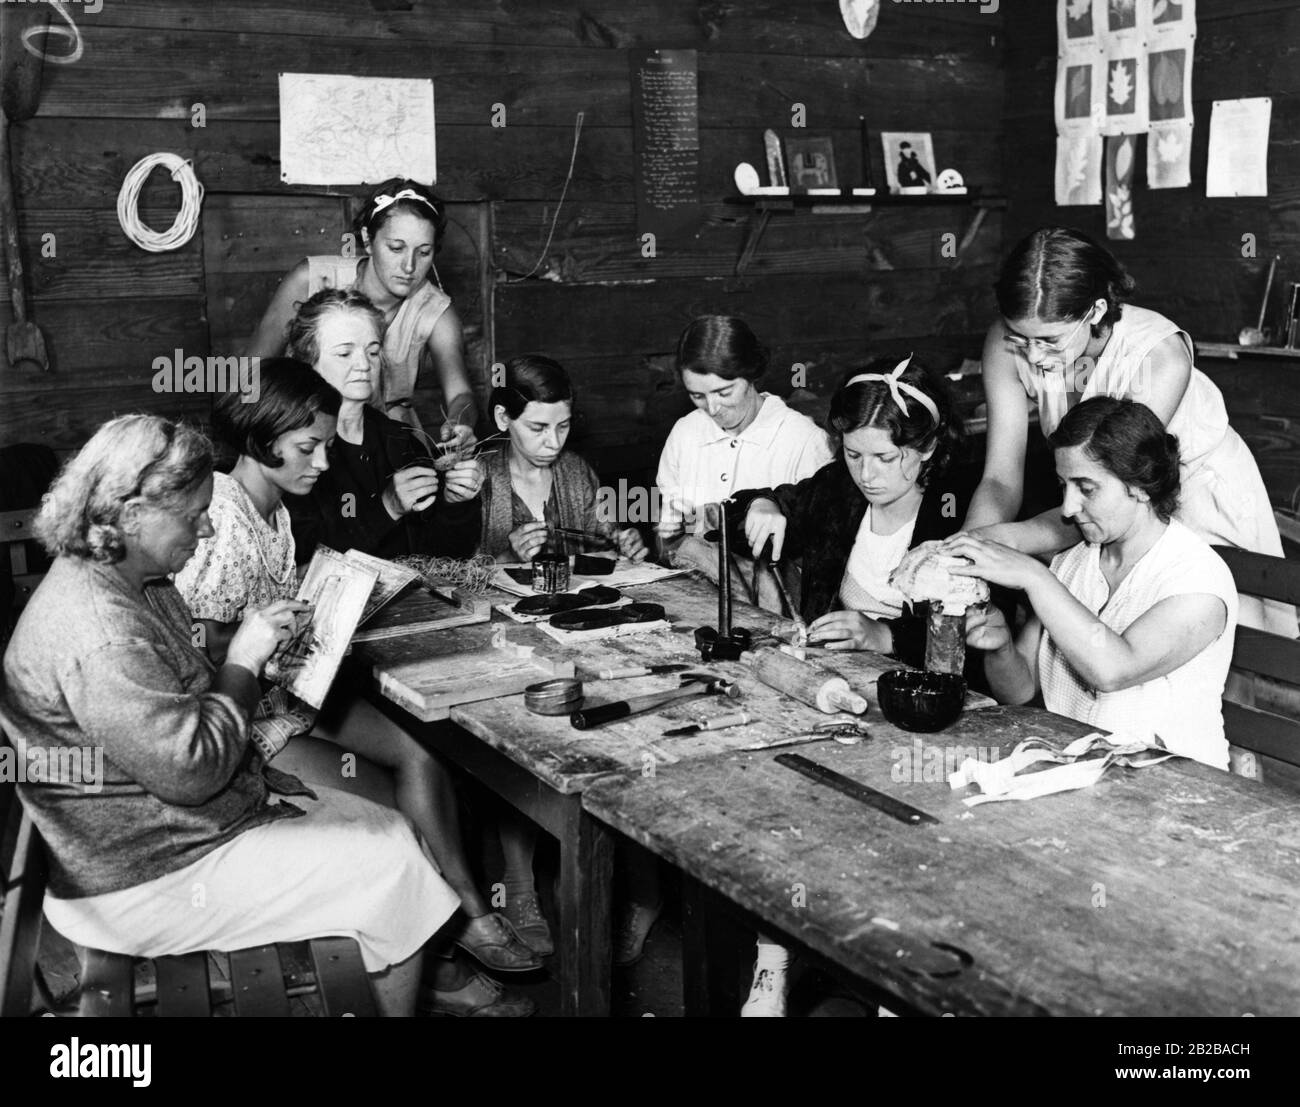 Programa de creación de empleo: Mujeres en una clase de artesanía en Nueva York, 1933 Foto de stock